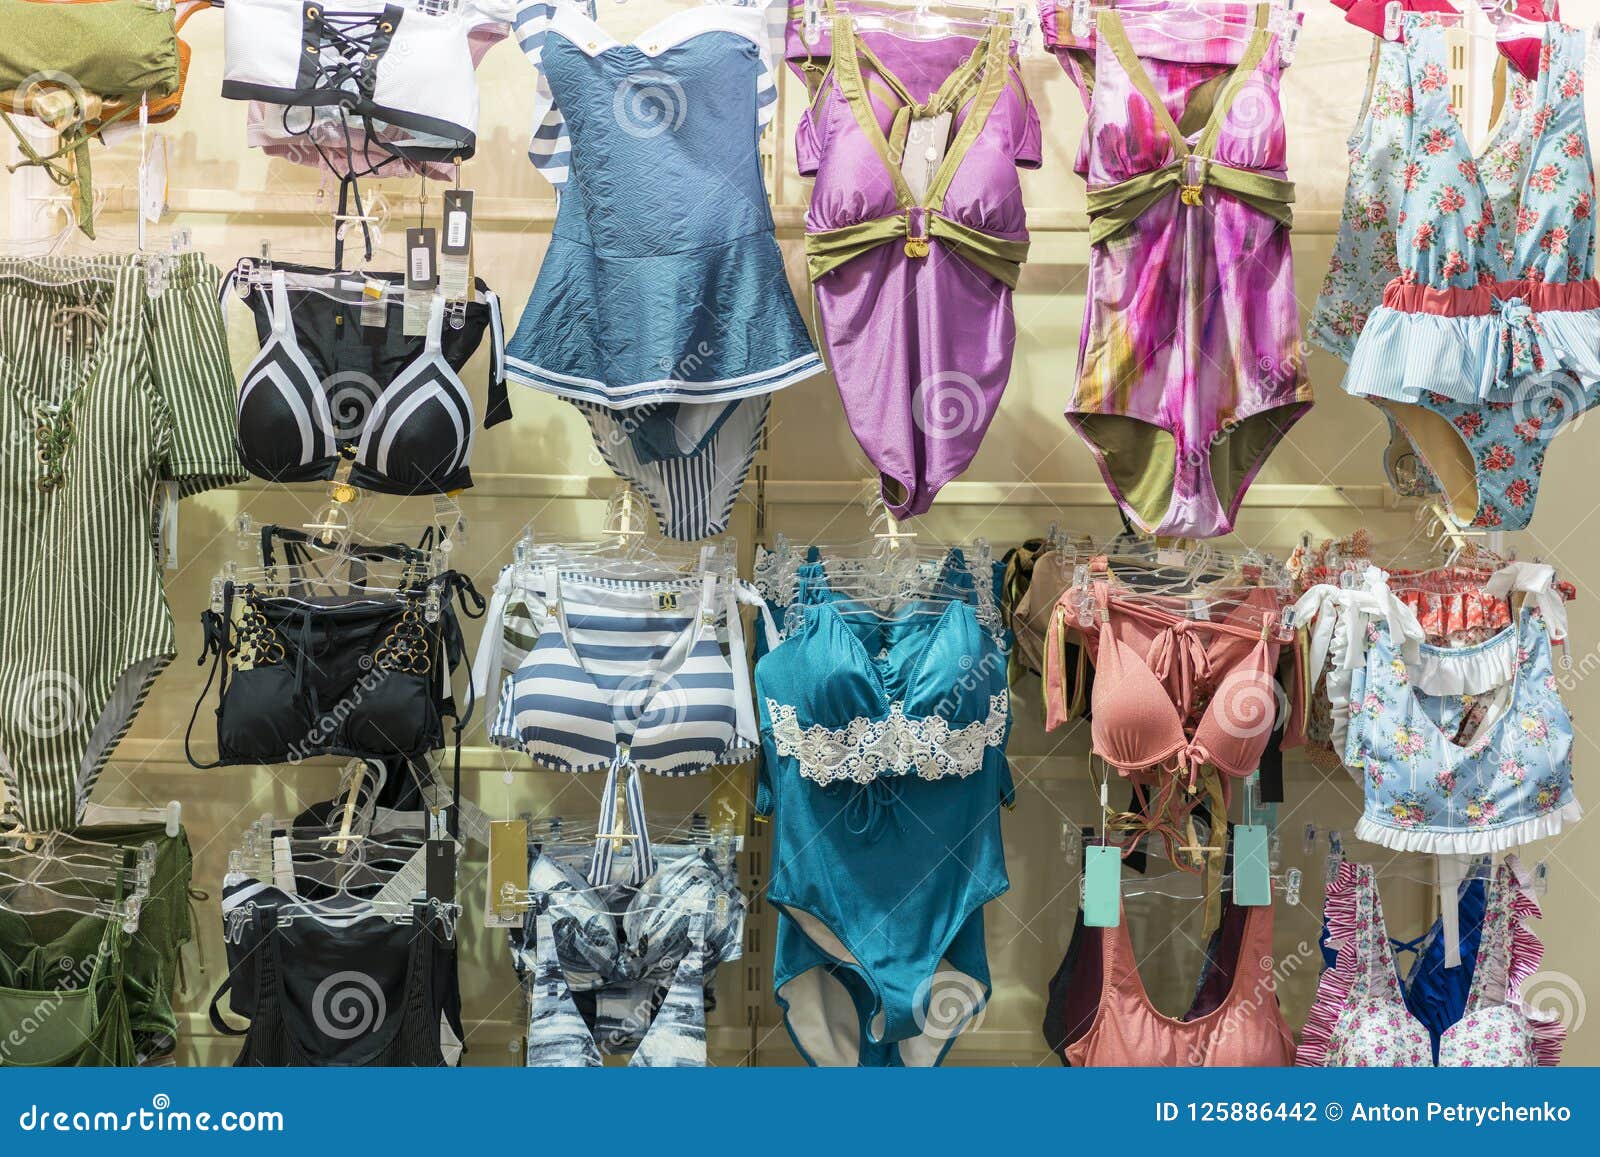 Woman Underwear. Lingerie on Rack. Retail Shop, Store. Women